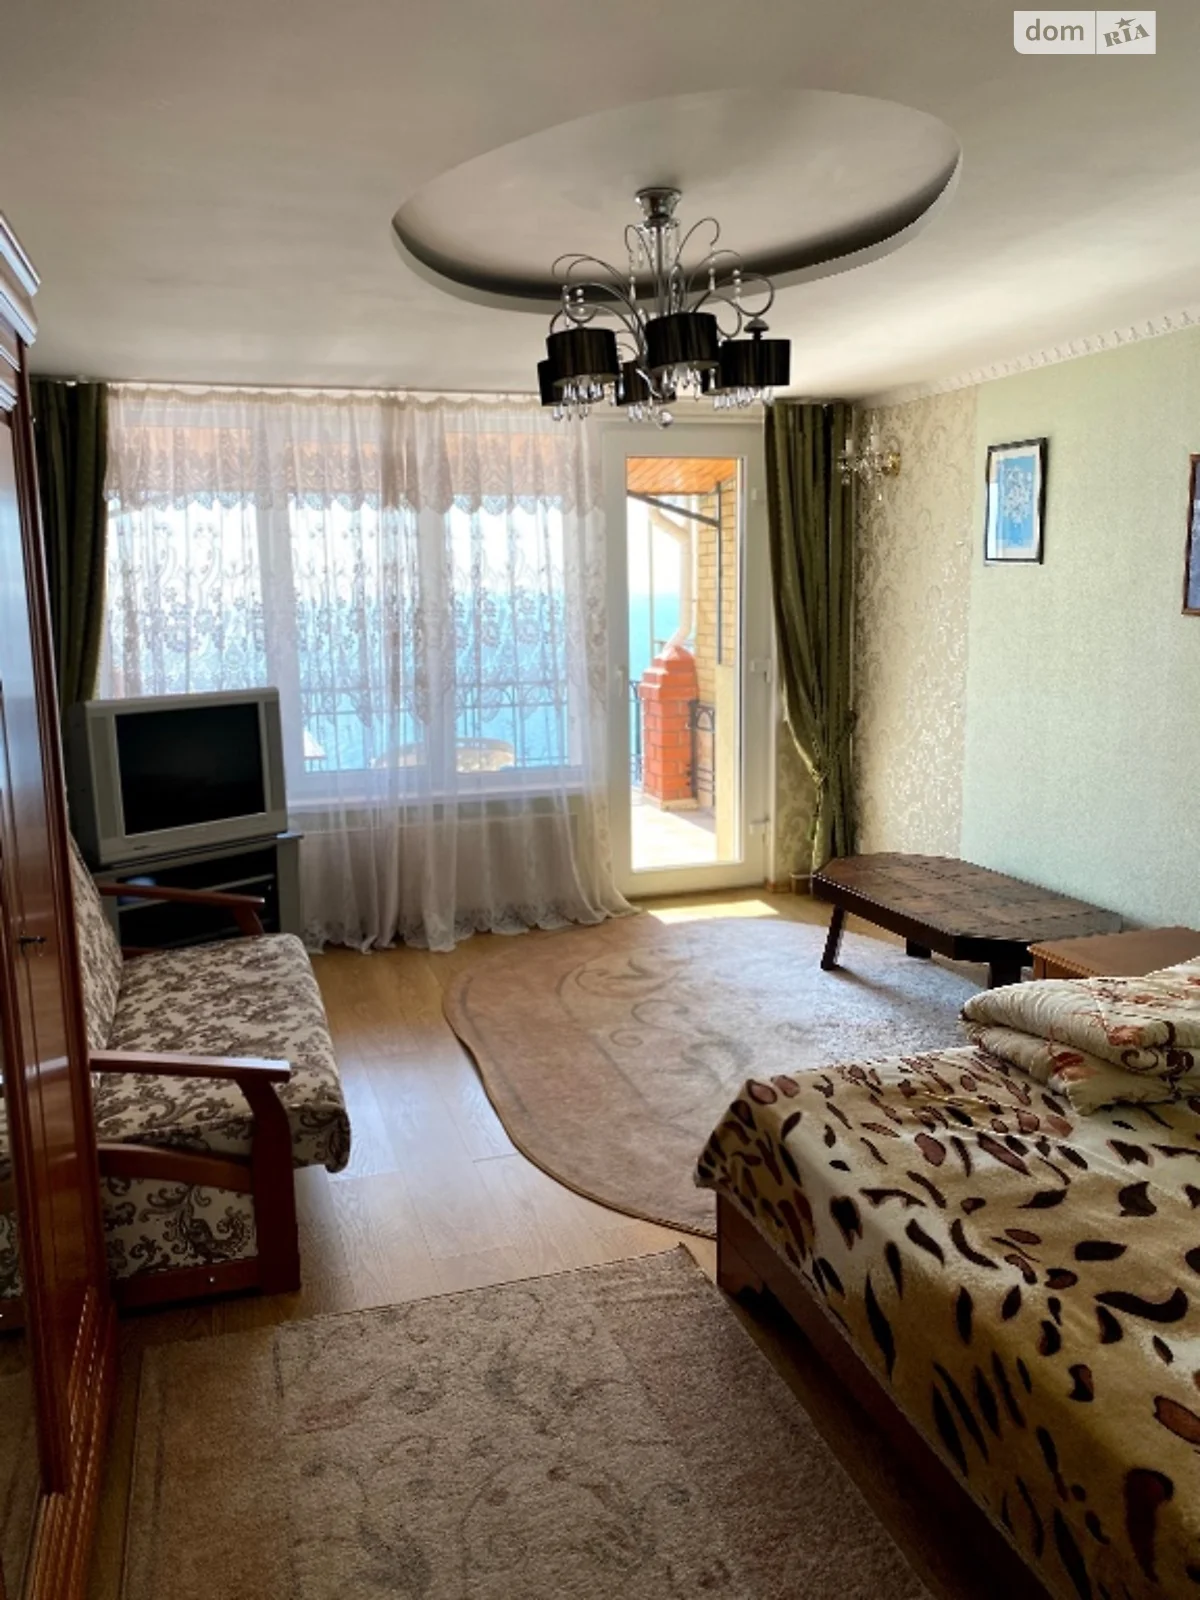 Сдается в аренду одноэтажный дом с подвалом, цена: 2500 грн